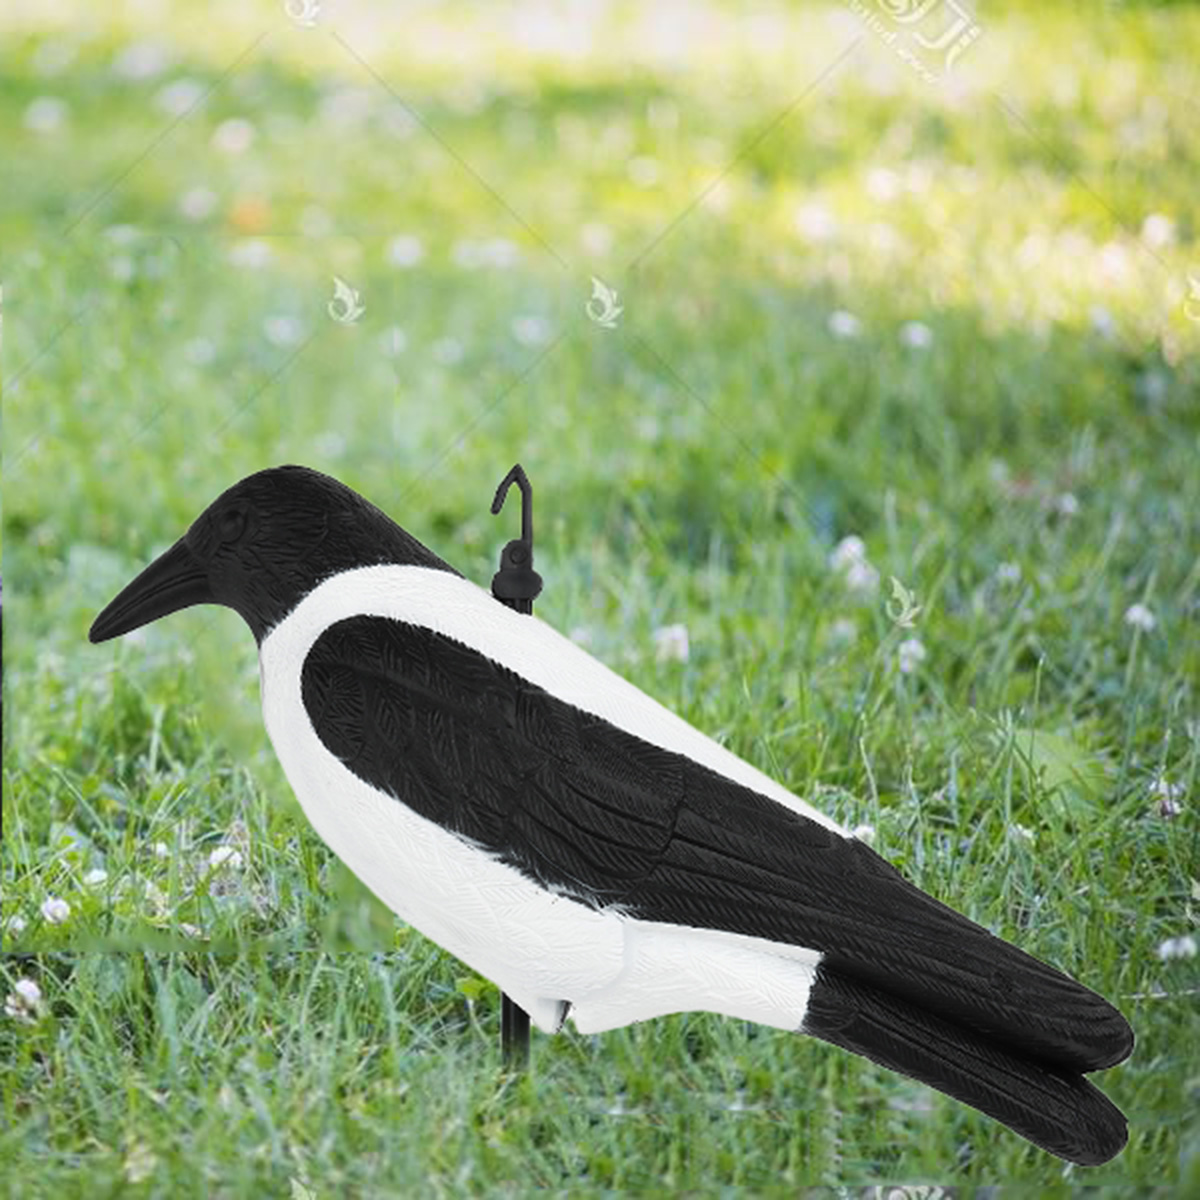 Crow-Hunting-Decoy-Bird-Deterrent-Scarer-Outdoor-Garden-Hunting-Equipment-1556629-7